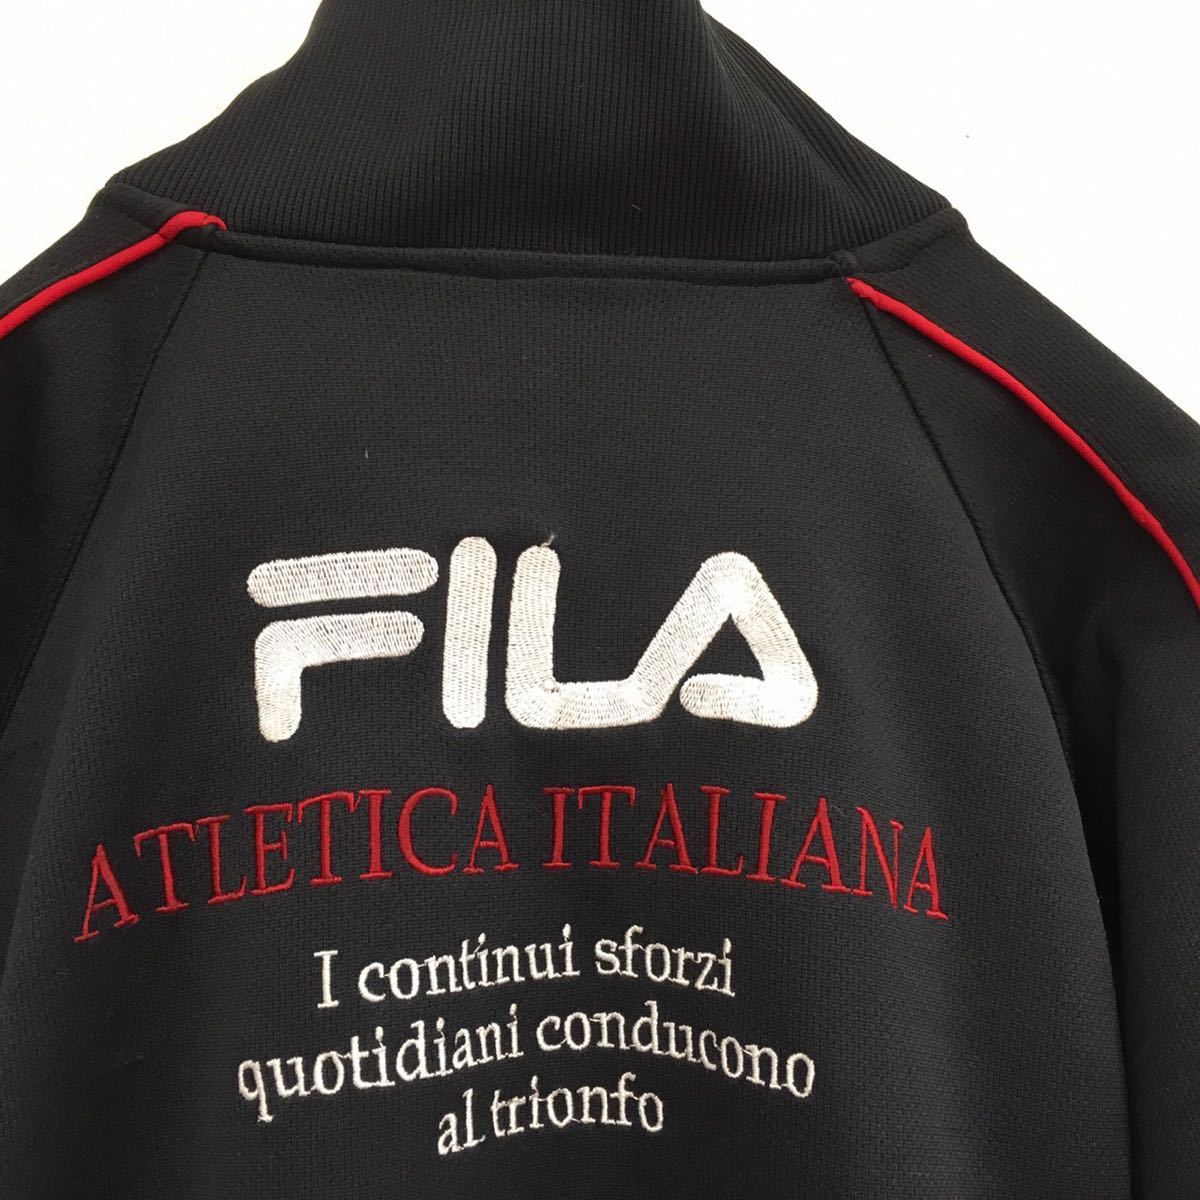 FILA filler спортивная куртка retro джерси вышивка большой Logo мужской L размер черный retro б/у одежда 